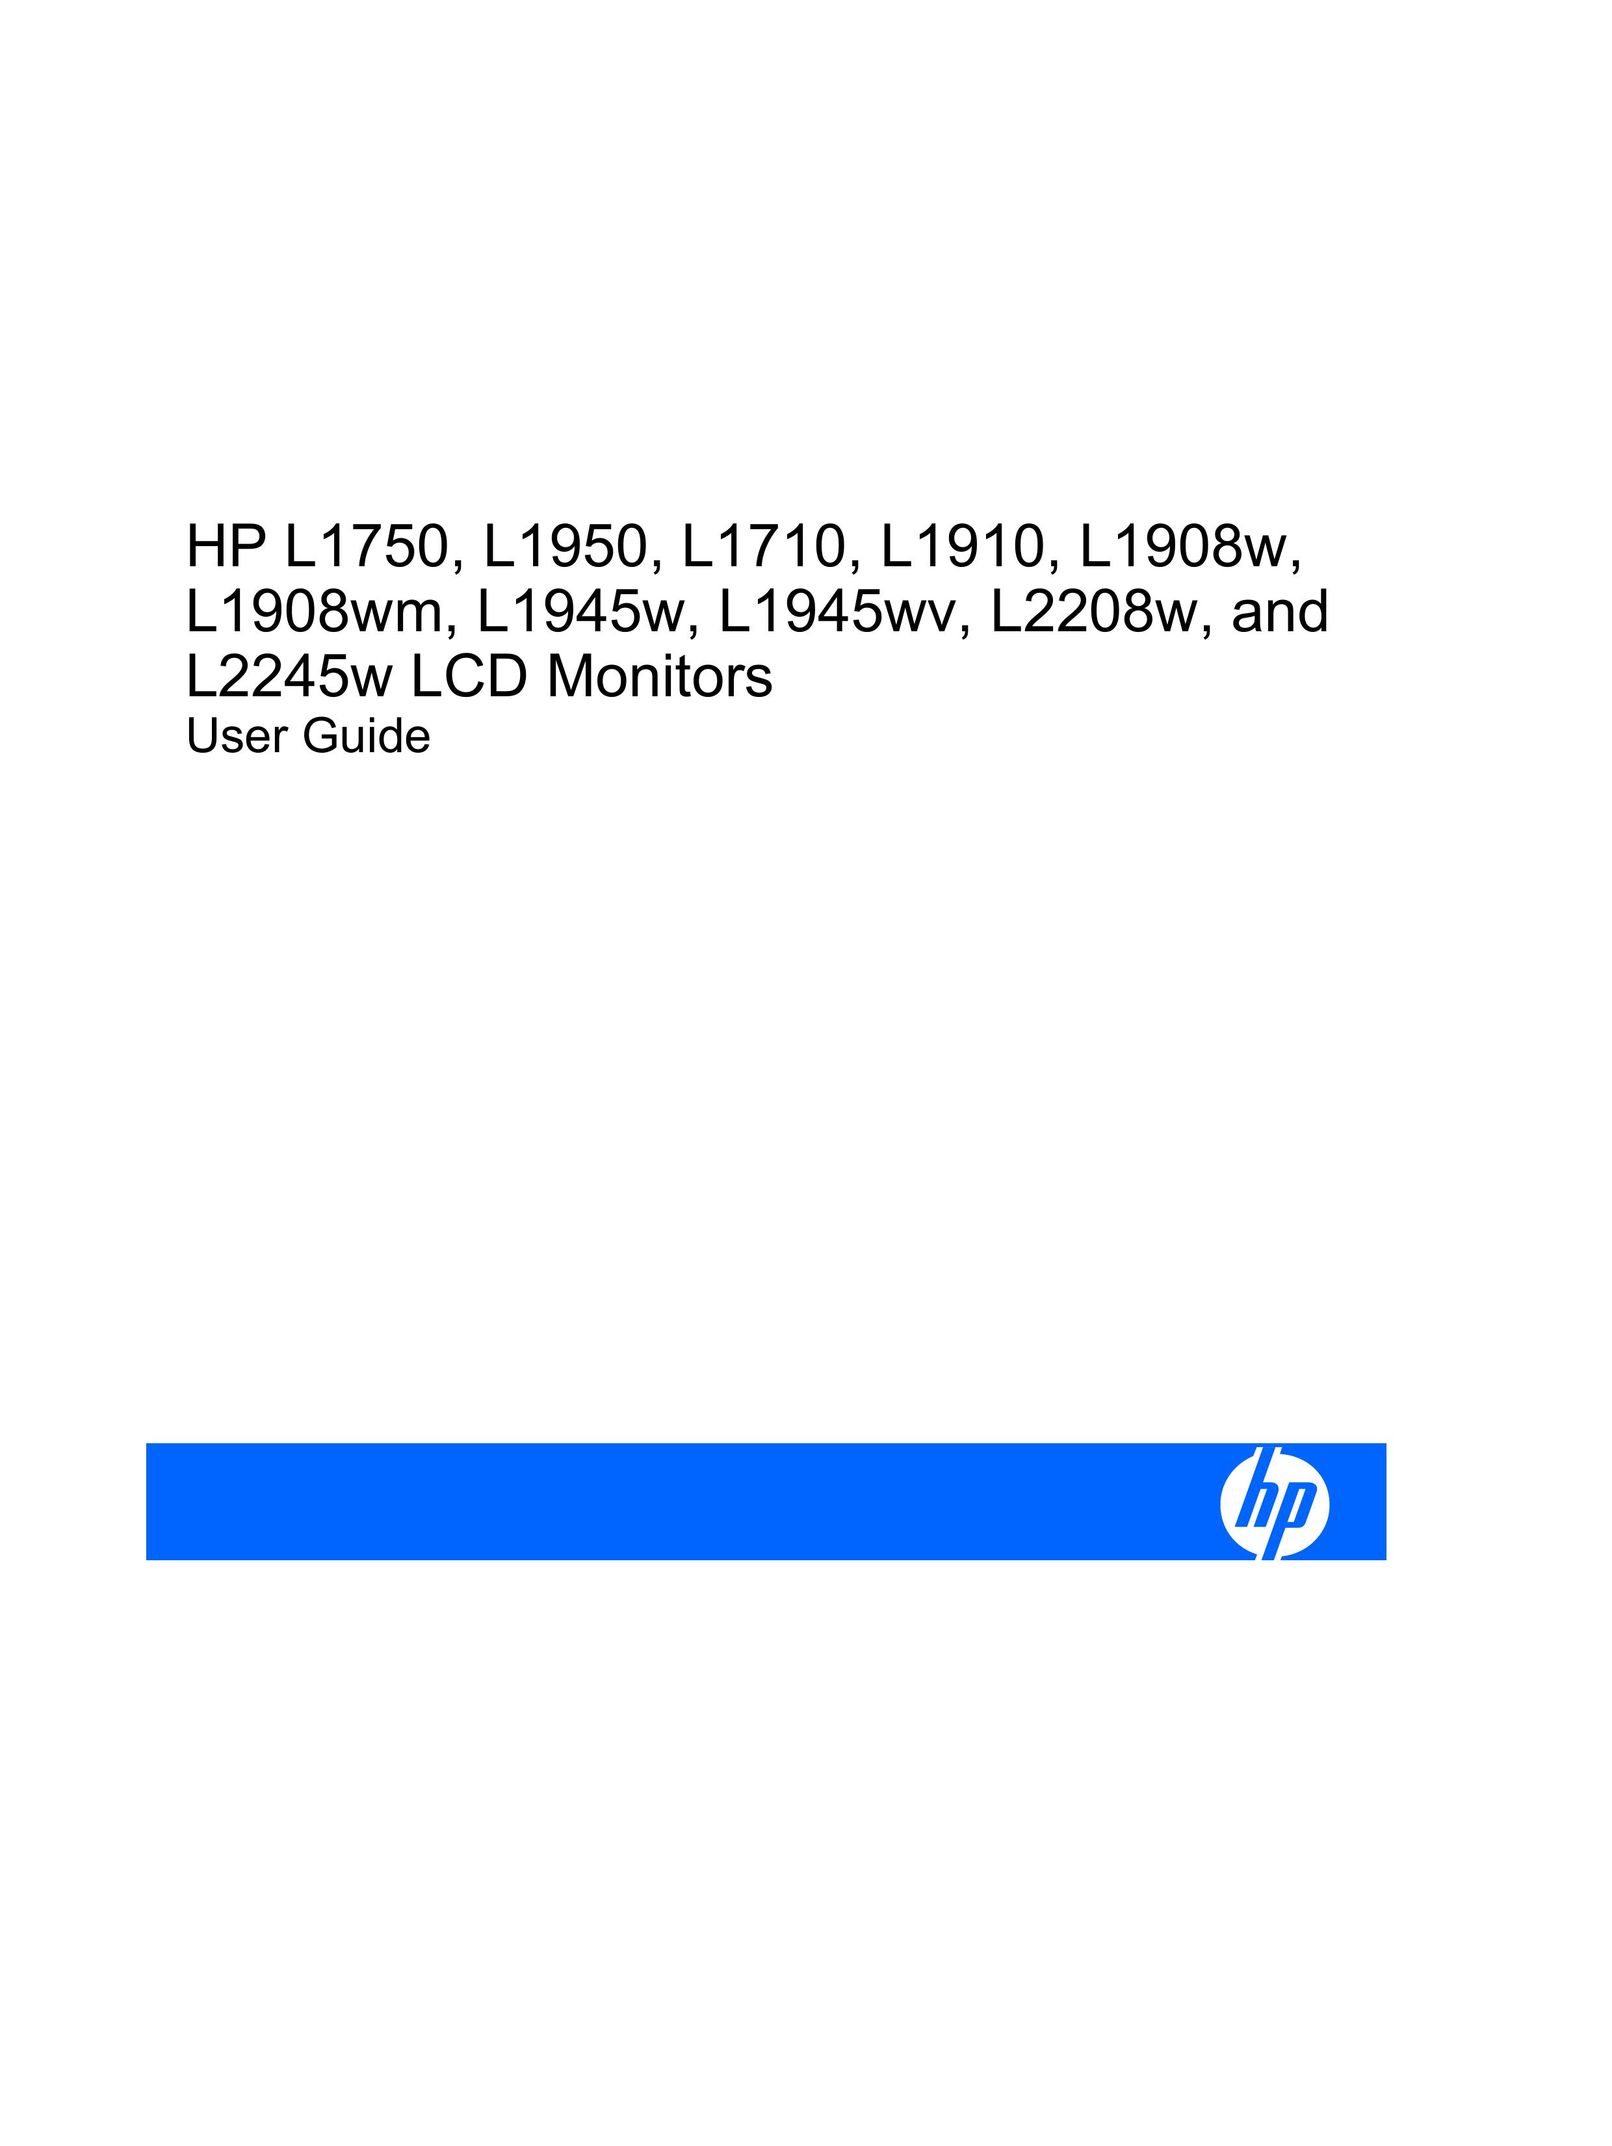 HP (Hewlett-Packard) L1945W Flat Panel Television User Manual